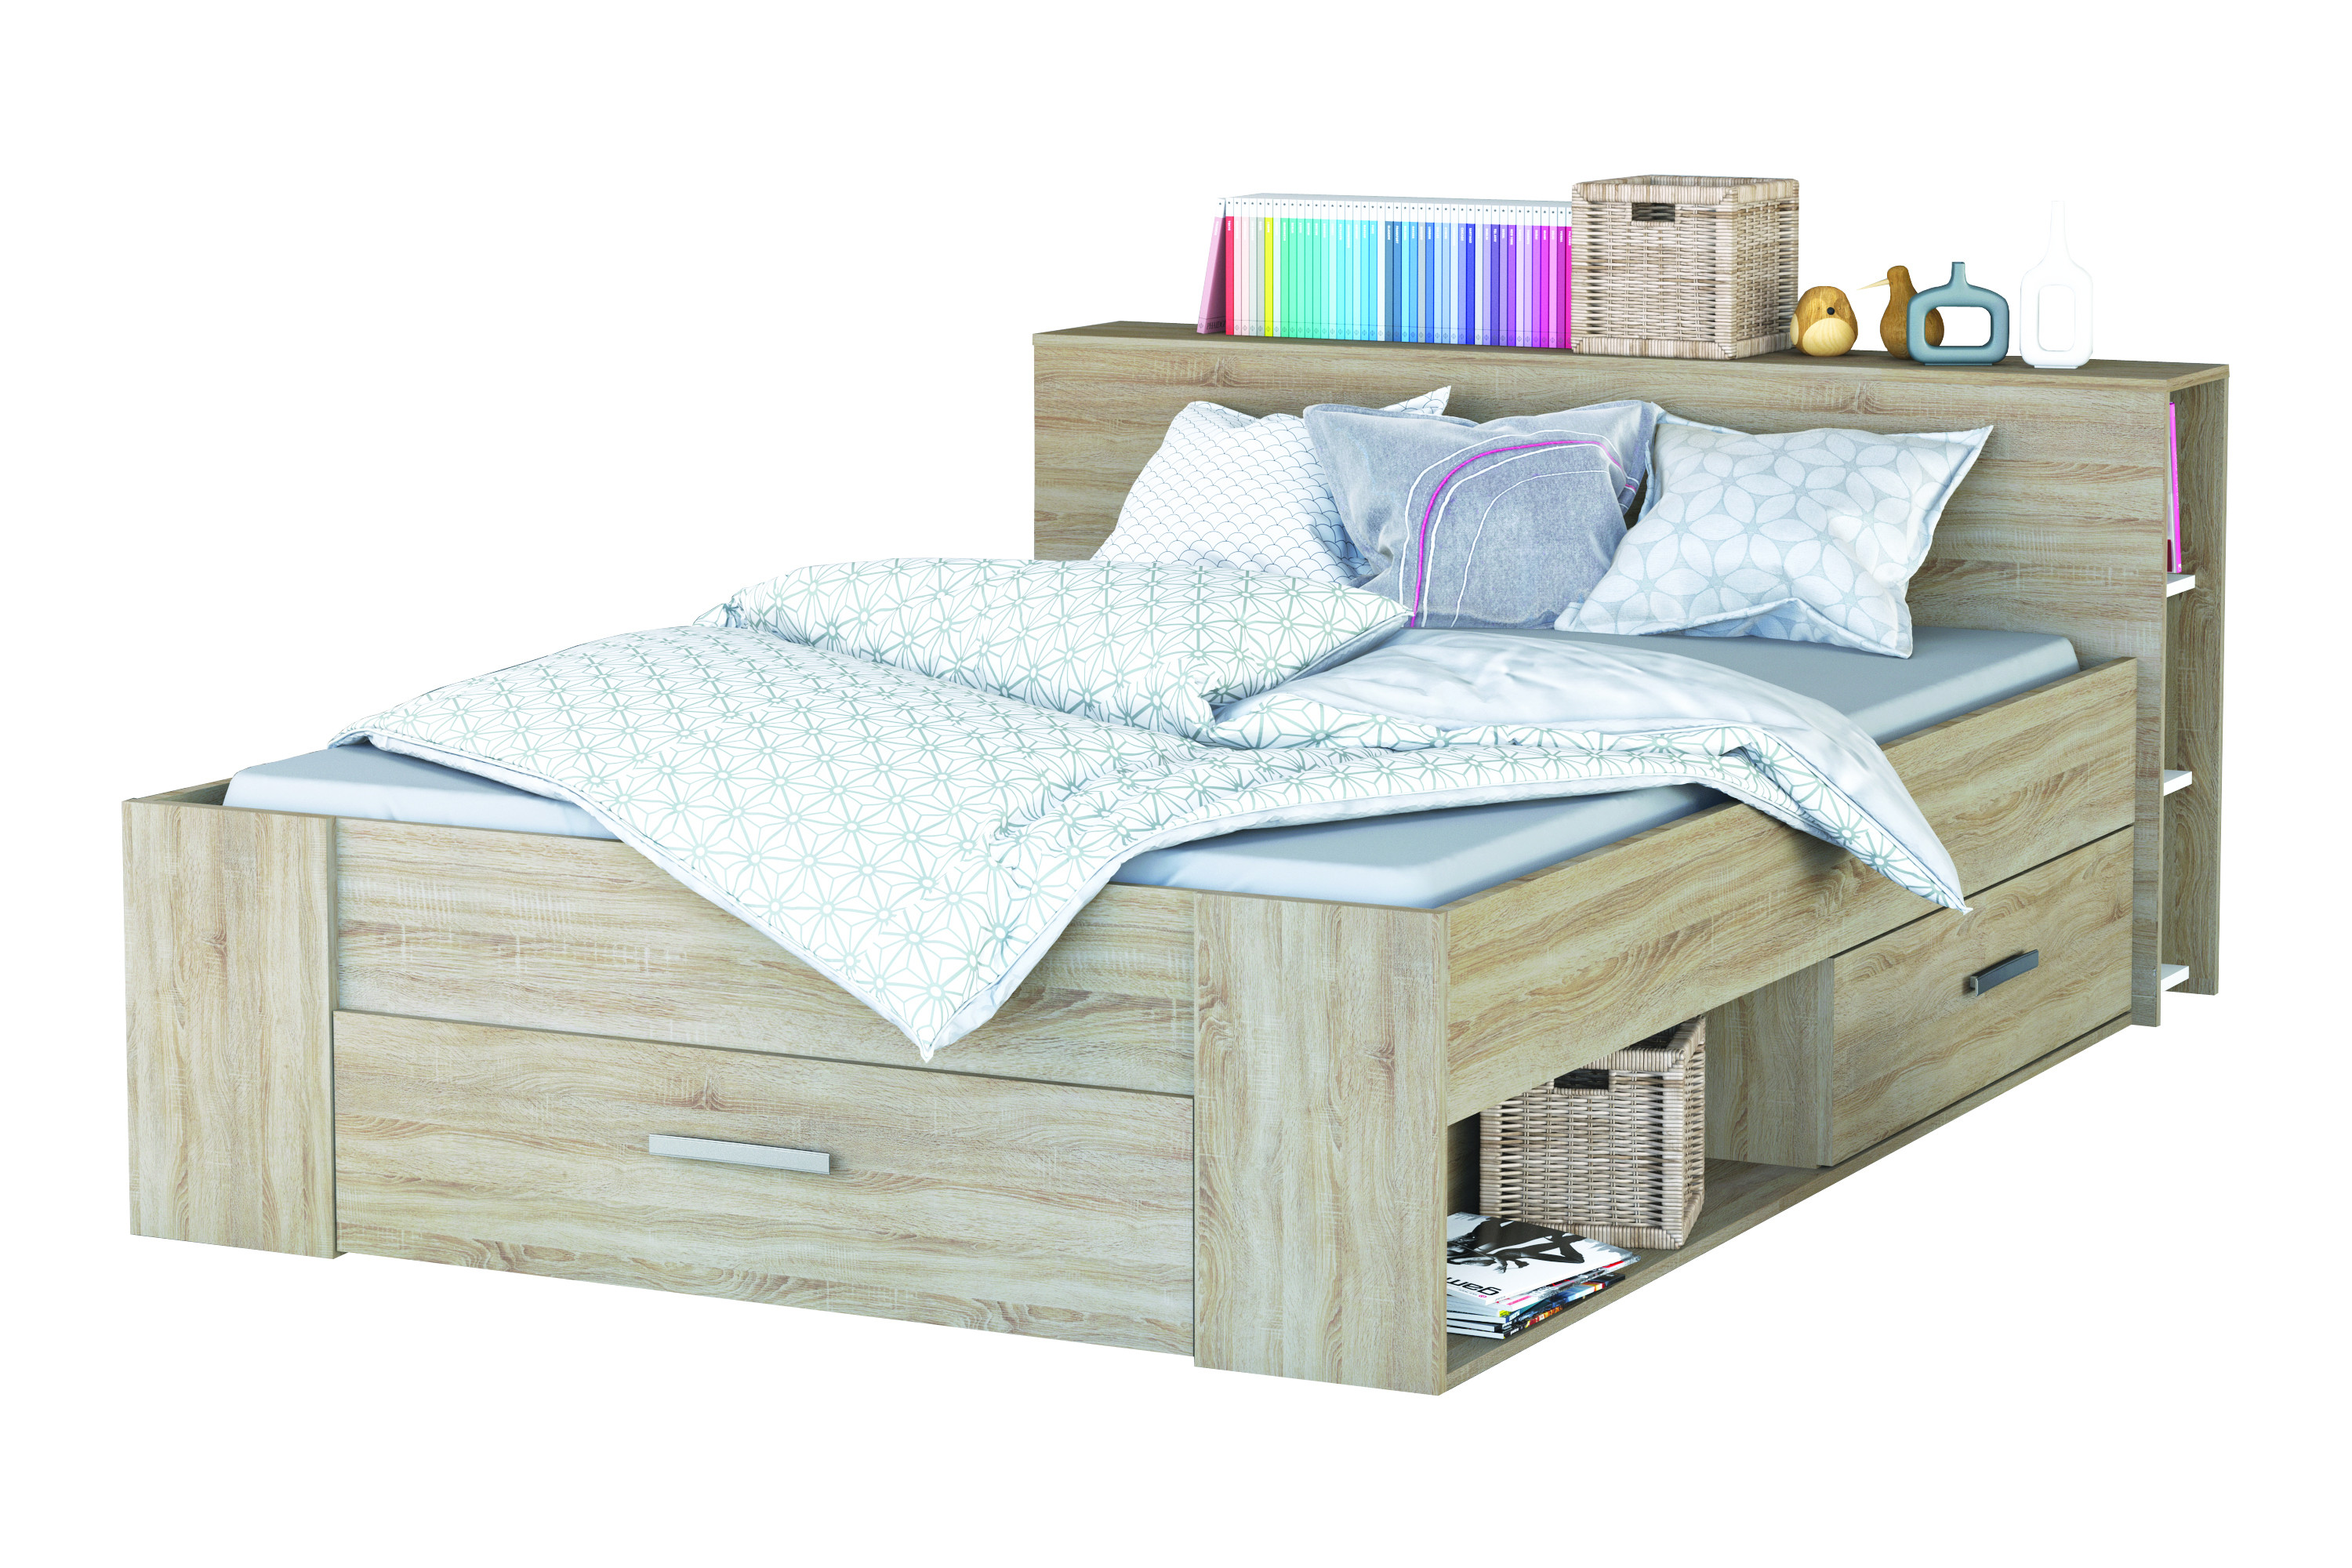 двуспальная кровать с ящиками в изголовье для белья и полочкой